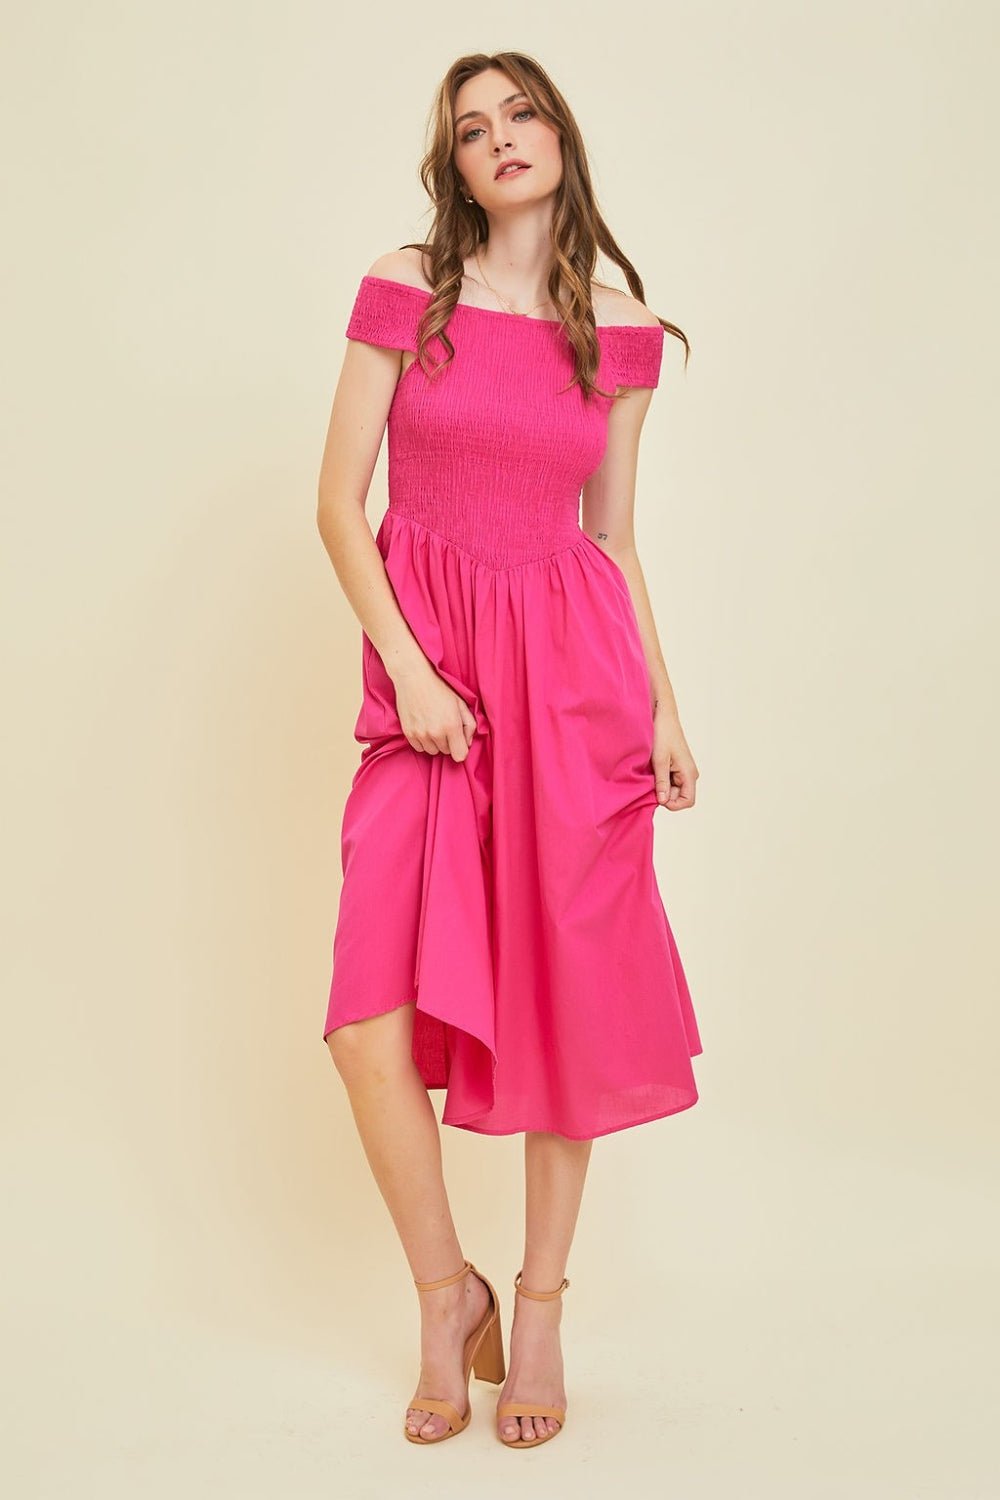 HEYSON Off - Shoulder Smocked Midi Dress - Happily Ever Atchison Shop Co.